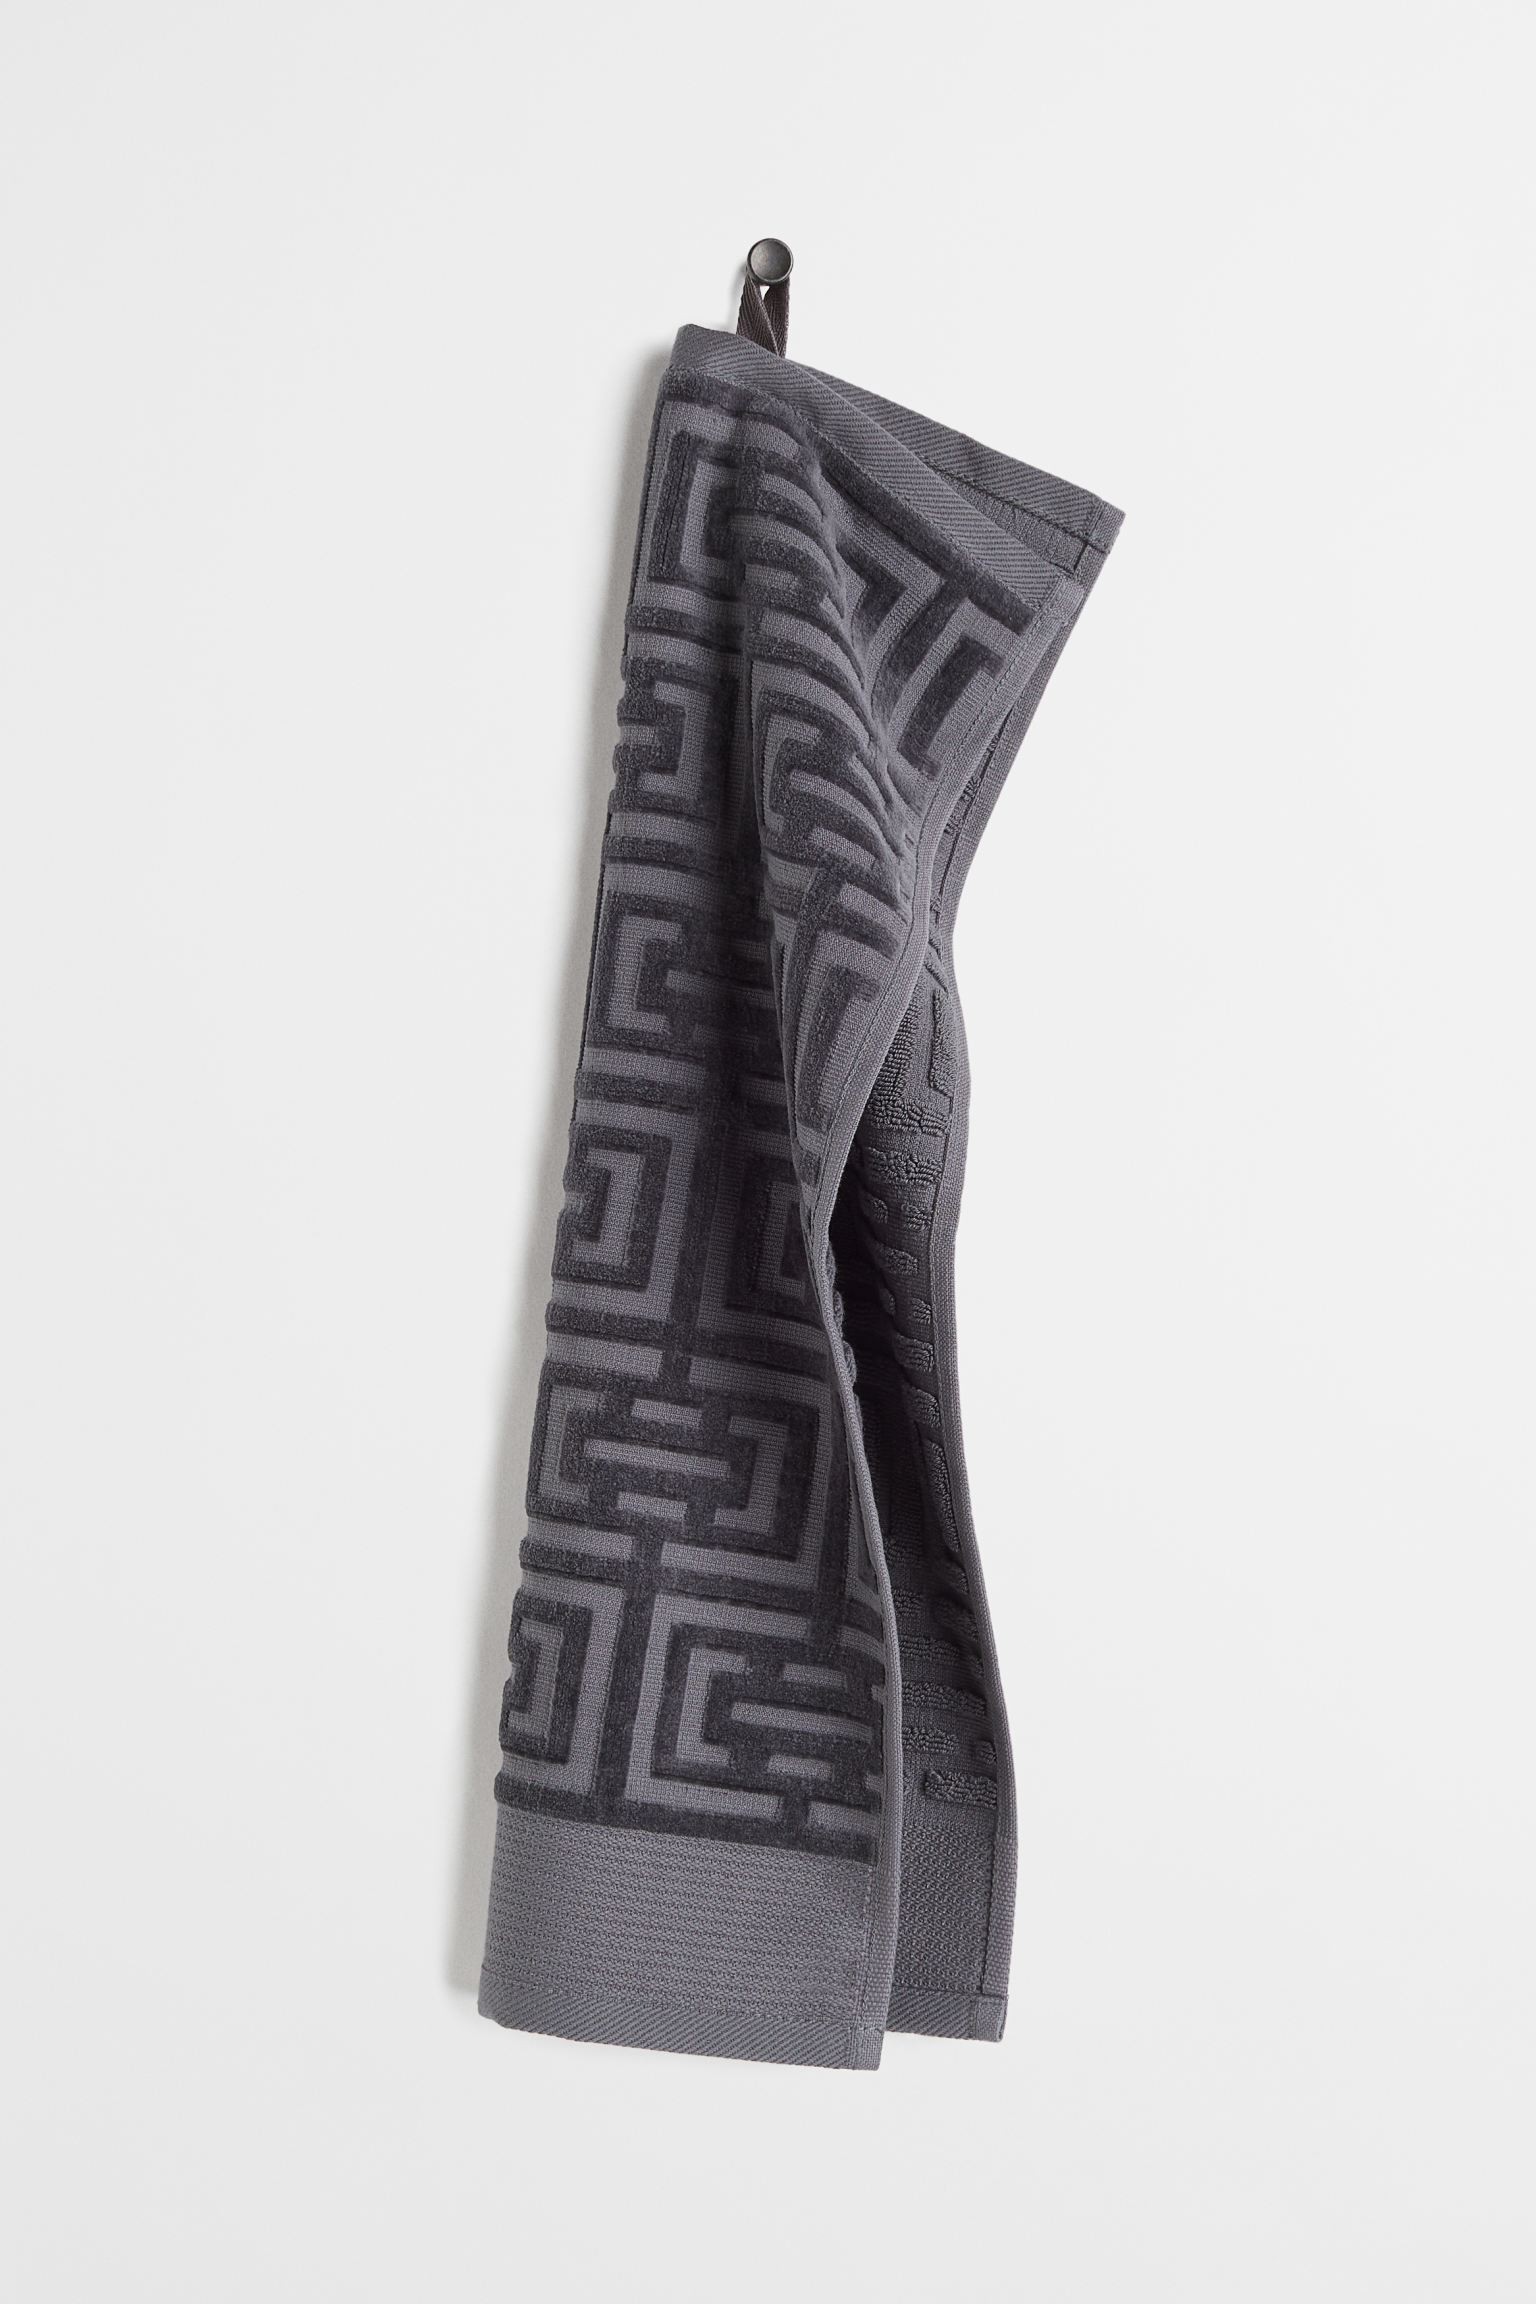 H&M Home Жакардовий рушник для гостей, темно-сірий, 30x50 1032007002 | 1032007002